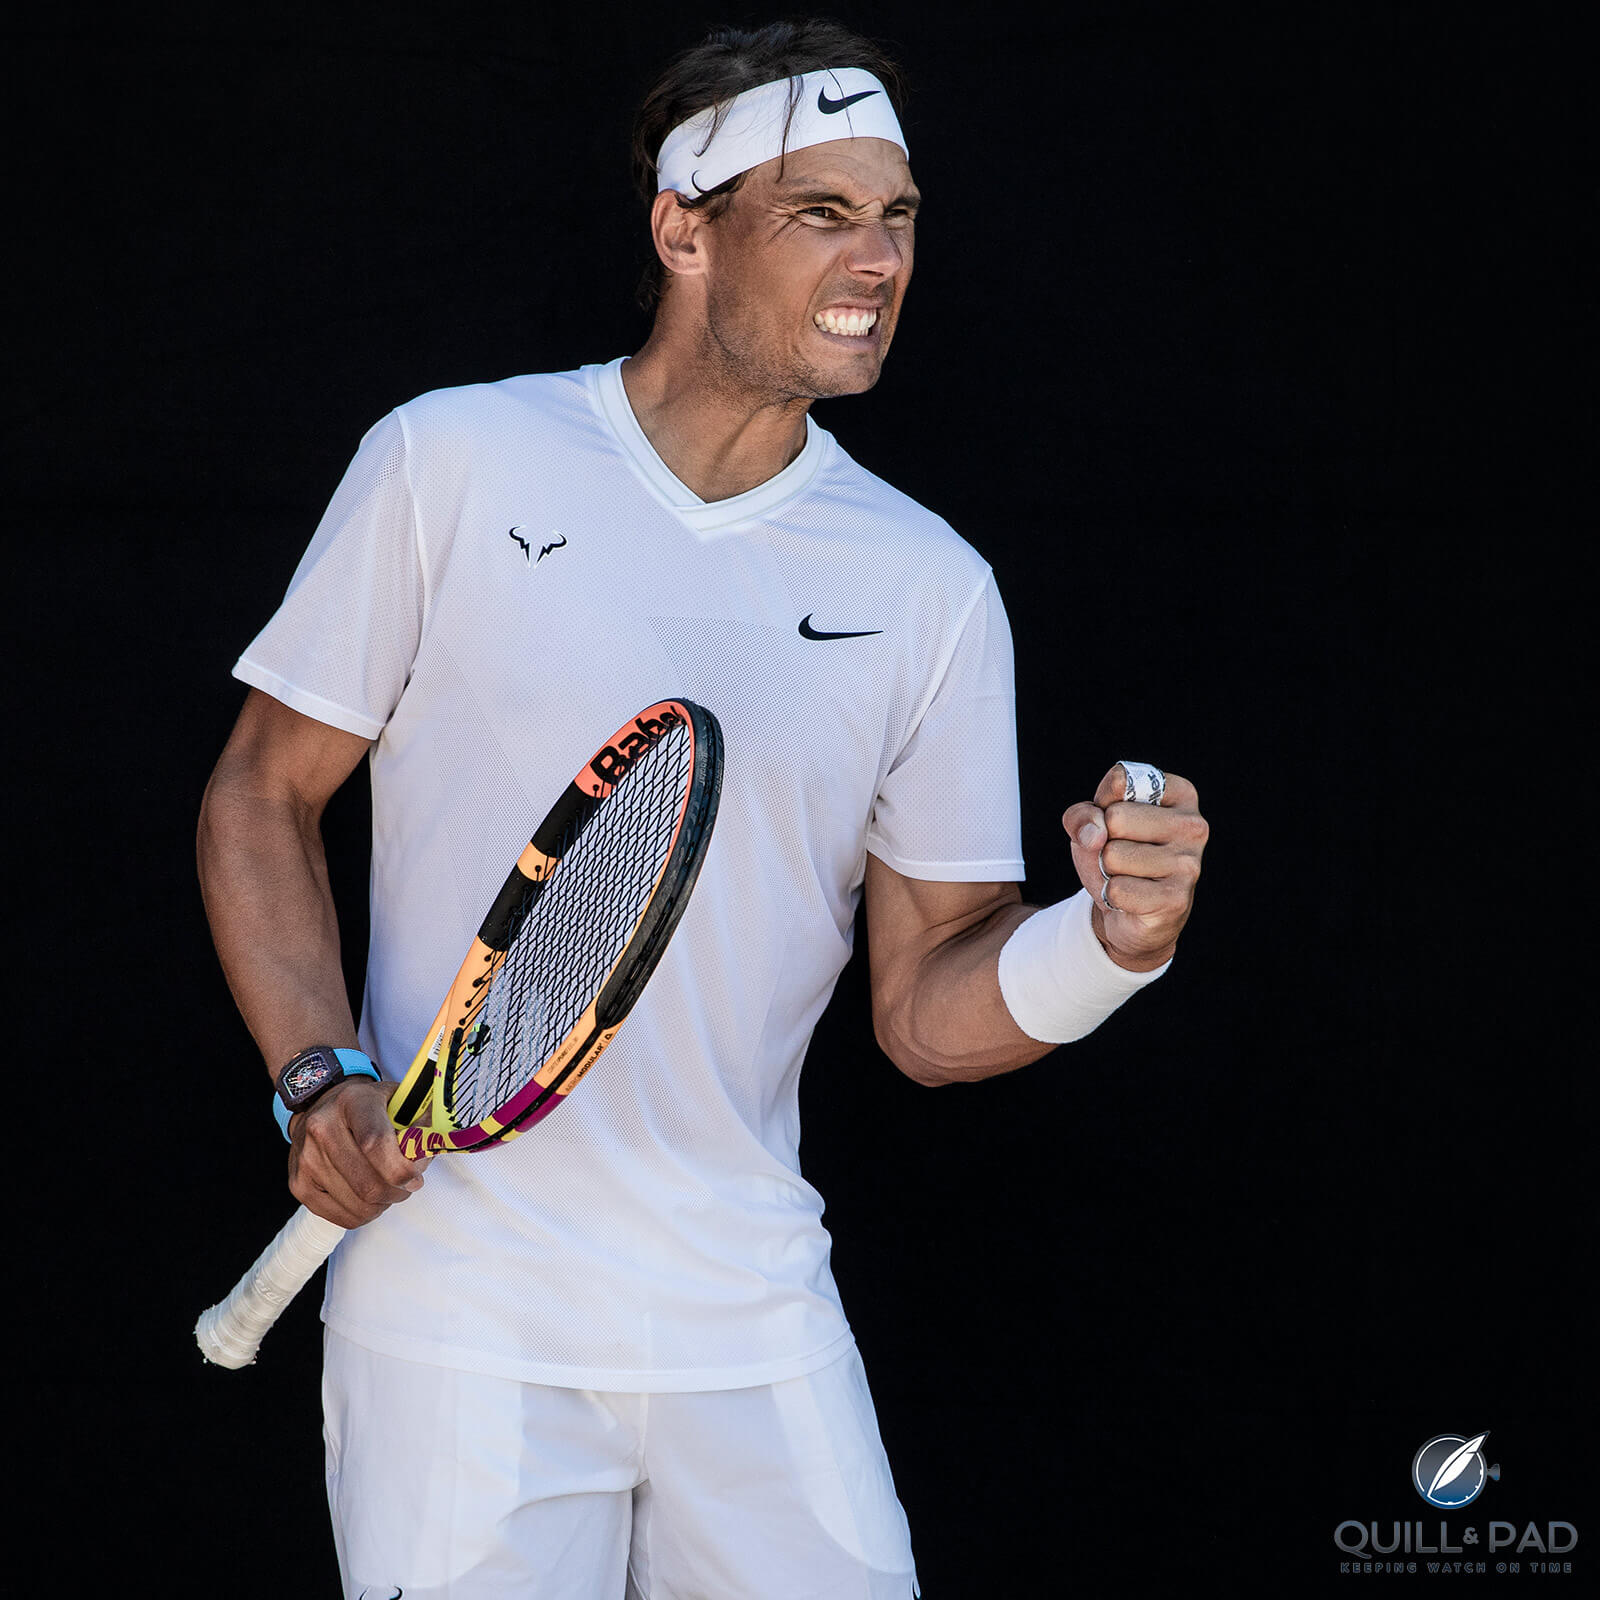 Rafael Nadal Wears A Richard Mille RM 27-04 As He Plays In The Australian Open 2022